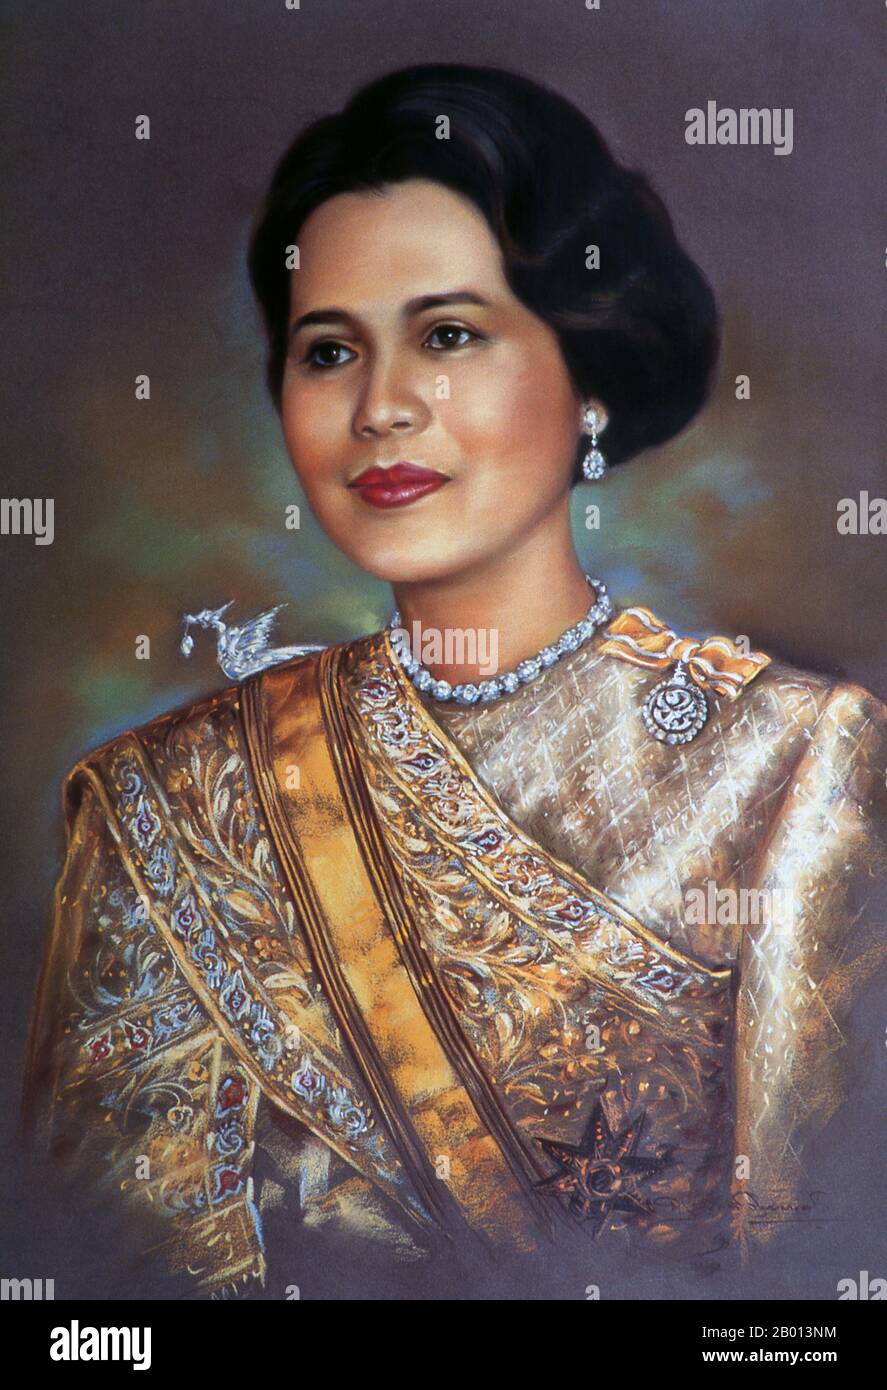 Thaïlande : Reine Sirikit (12 août 1932 - ), consort de Bhumibol Adulyadej (Rama IX), roi de Thaïlande. Peinture à l'huile sur toile, c. années 1950-1960. Somdet Phra Nang Chao Sirikit Phra Borommarachininat, né Mum Rajawongse Sirikit Kitiyakara le 12 août 1932), est la reine consort de Bhumibol Adulyadej, roi (Rama IX) de Thaïlande. Elle est la deuxième reine Regent de Thaïlande (la première reine Regent était la reine Saovabha Bongsri de Siam, plus tard la reine Sri Patcharindra, la reine mère). Elle a subi un accident vasculaire cérébral le 21 juillet 2012 et n'a pas été vue en public depuis. Banque D'Images